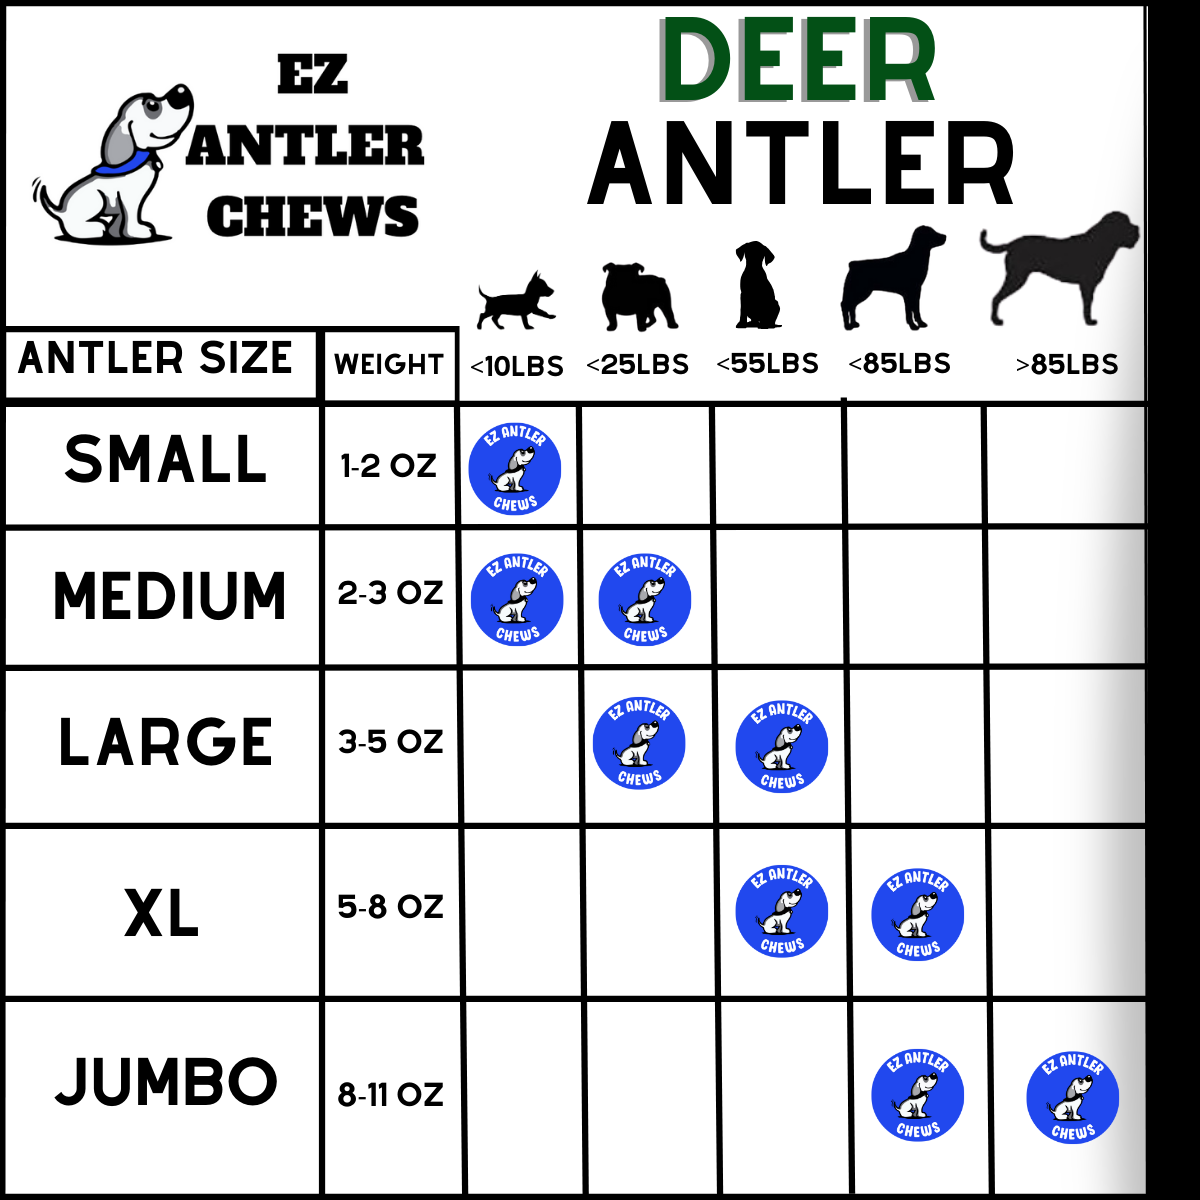 Small Deer Antler Chew (Under 10lb)